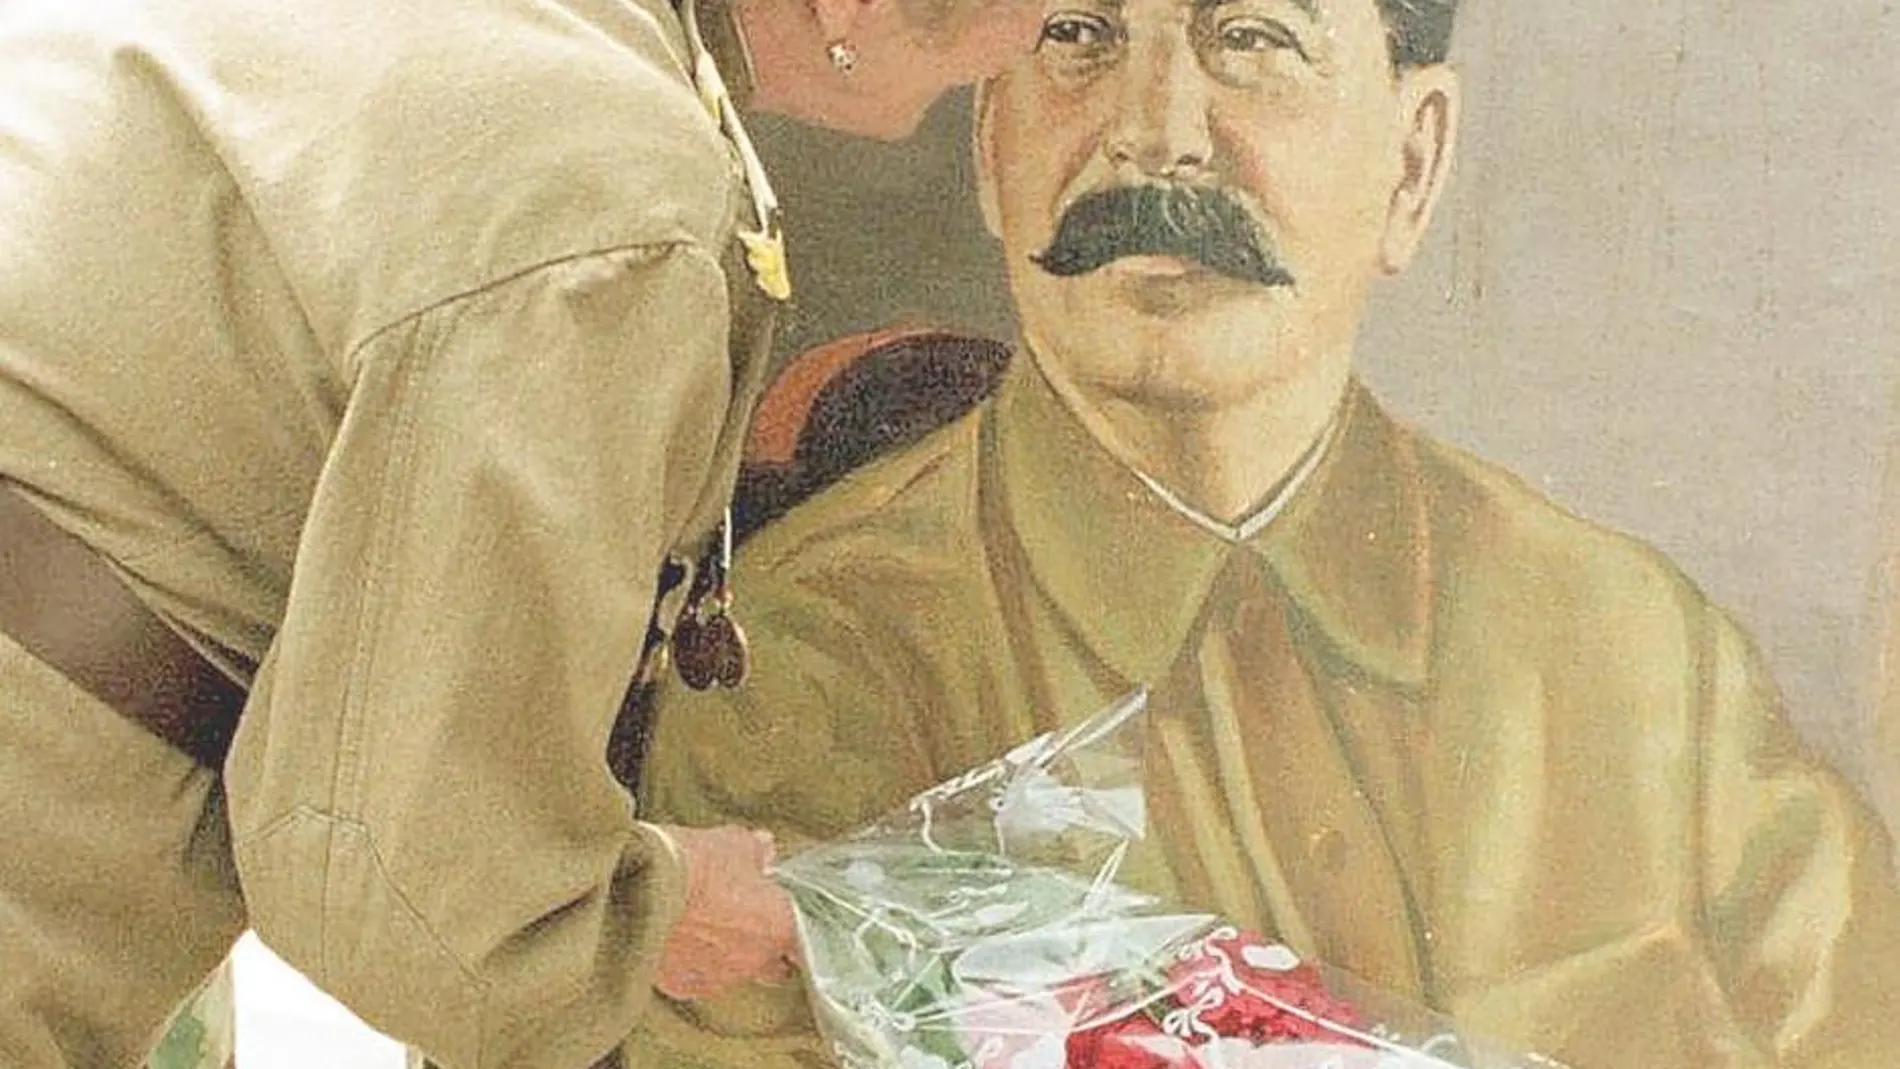 Stalin (1878-1953) está considerado uno de los políticos más despiadados del siglo XX, estatuto que comparte con Hitler. Eliminó a todos sus adversarios, que se contaban por millones, y supo permanecer en el poder con mano de hierro. En la imagen, una mujer besa un retrato del dictador